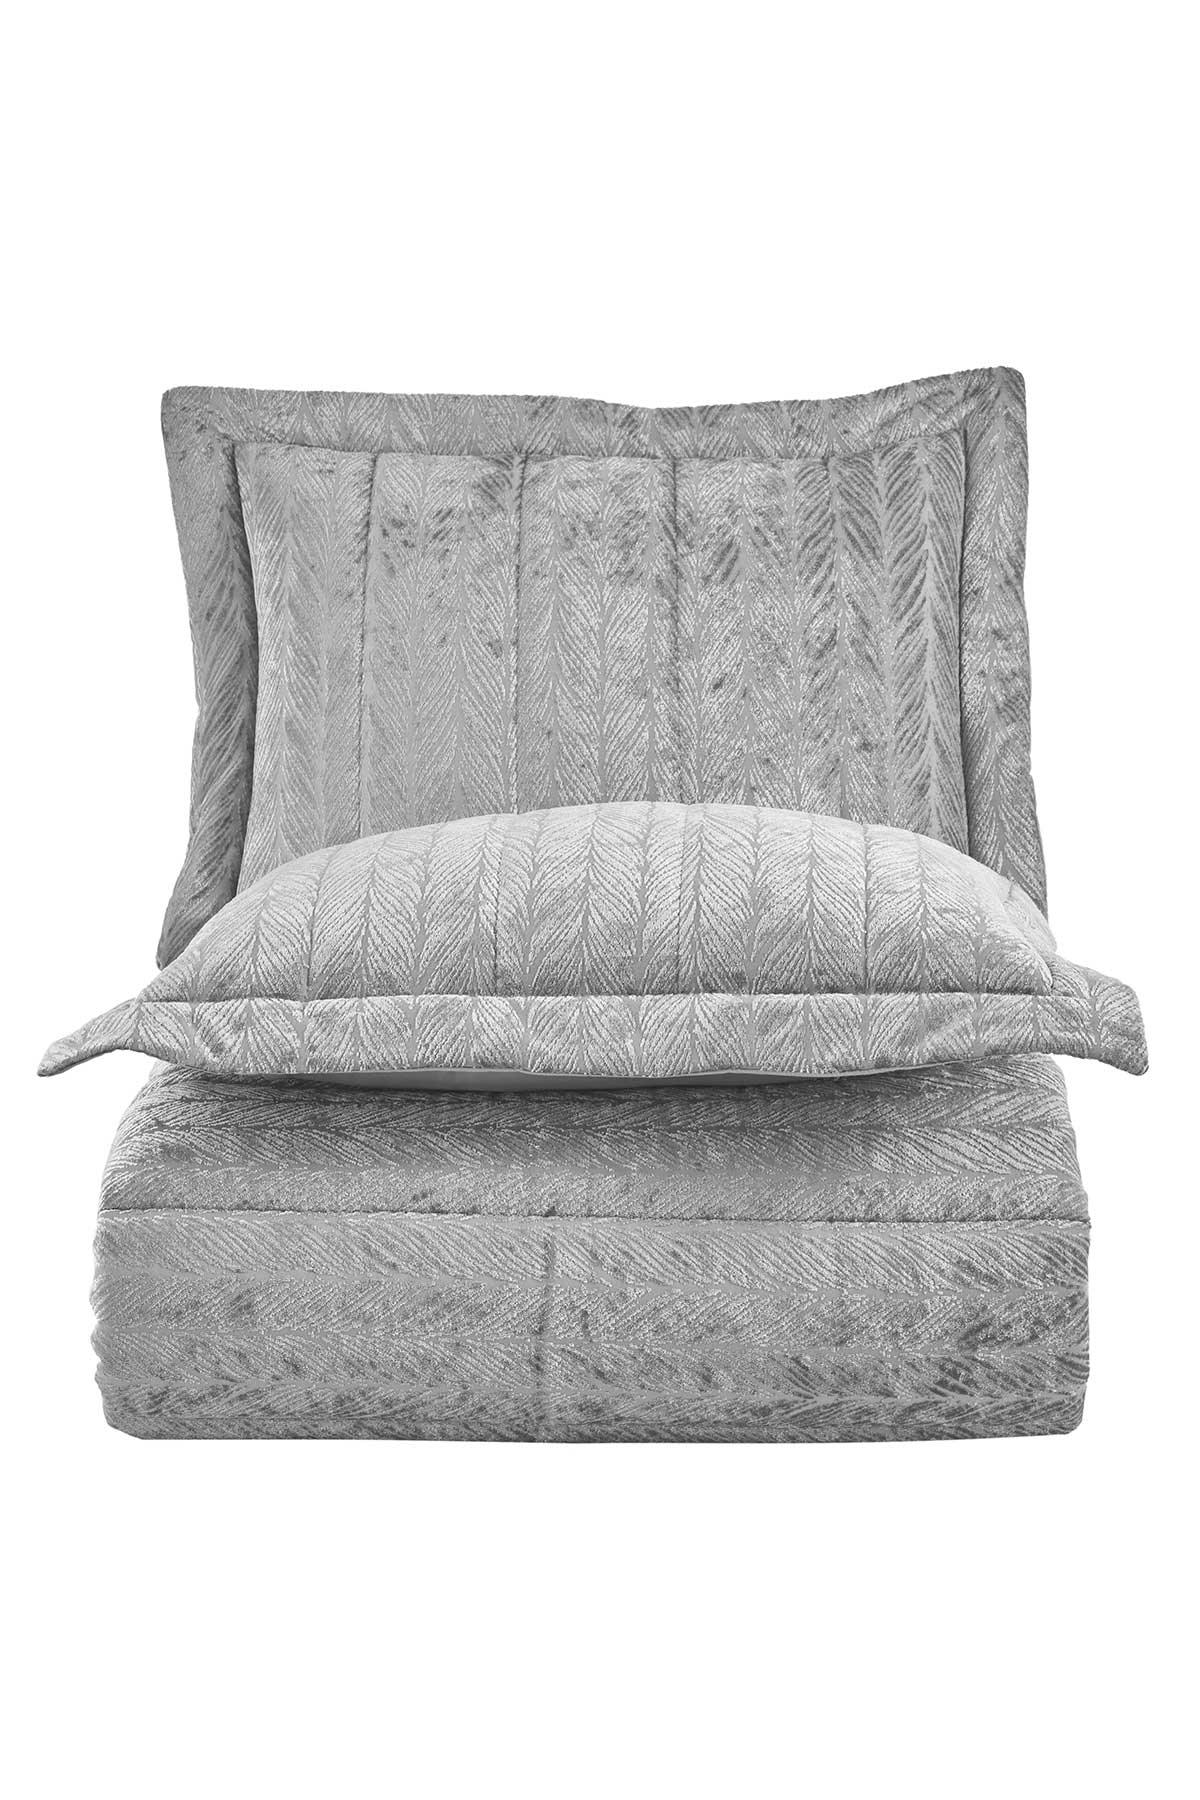 Velvet Kadife Comfort Set Modern Uyku Seti Tek Kişilik Gümüş 2 Parça - Elart Home